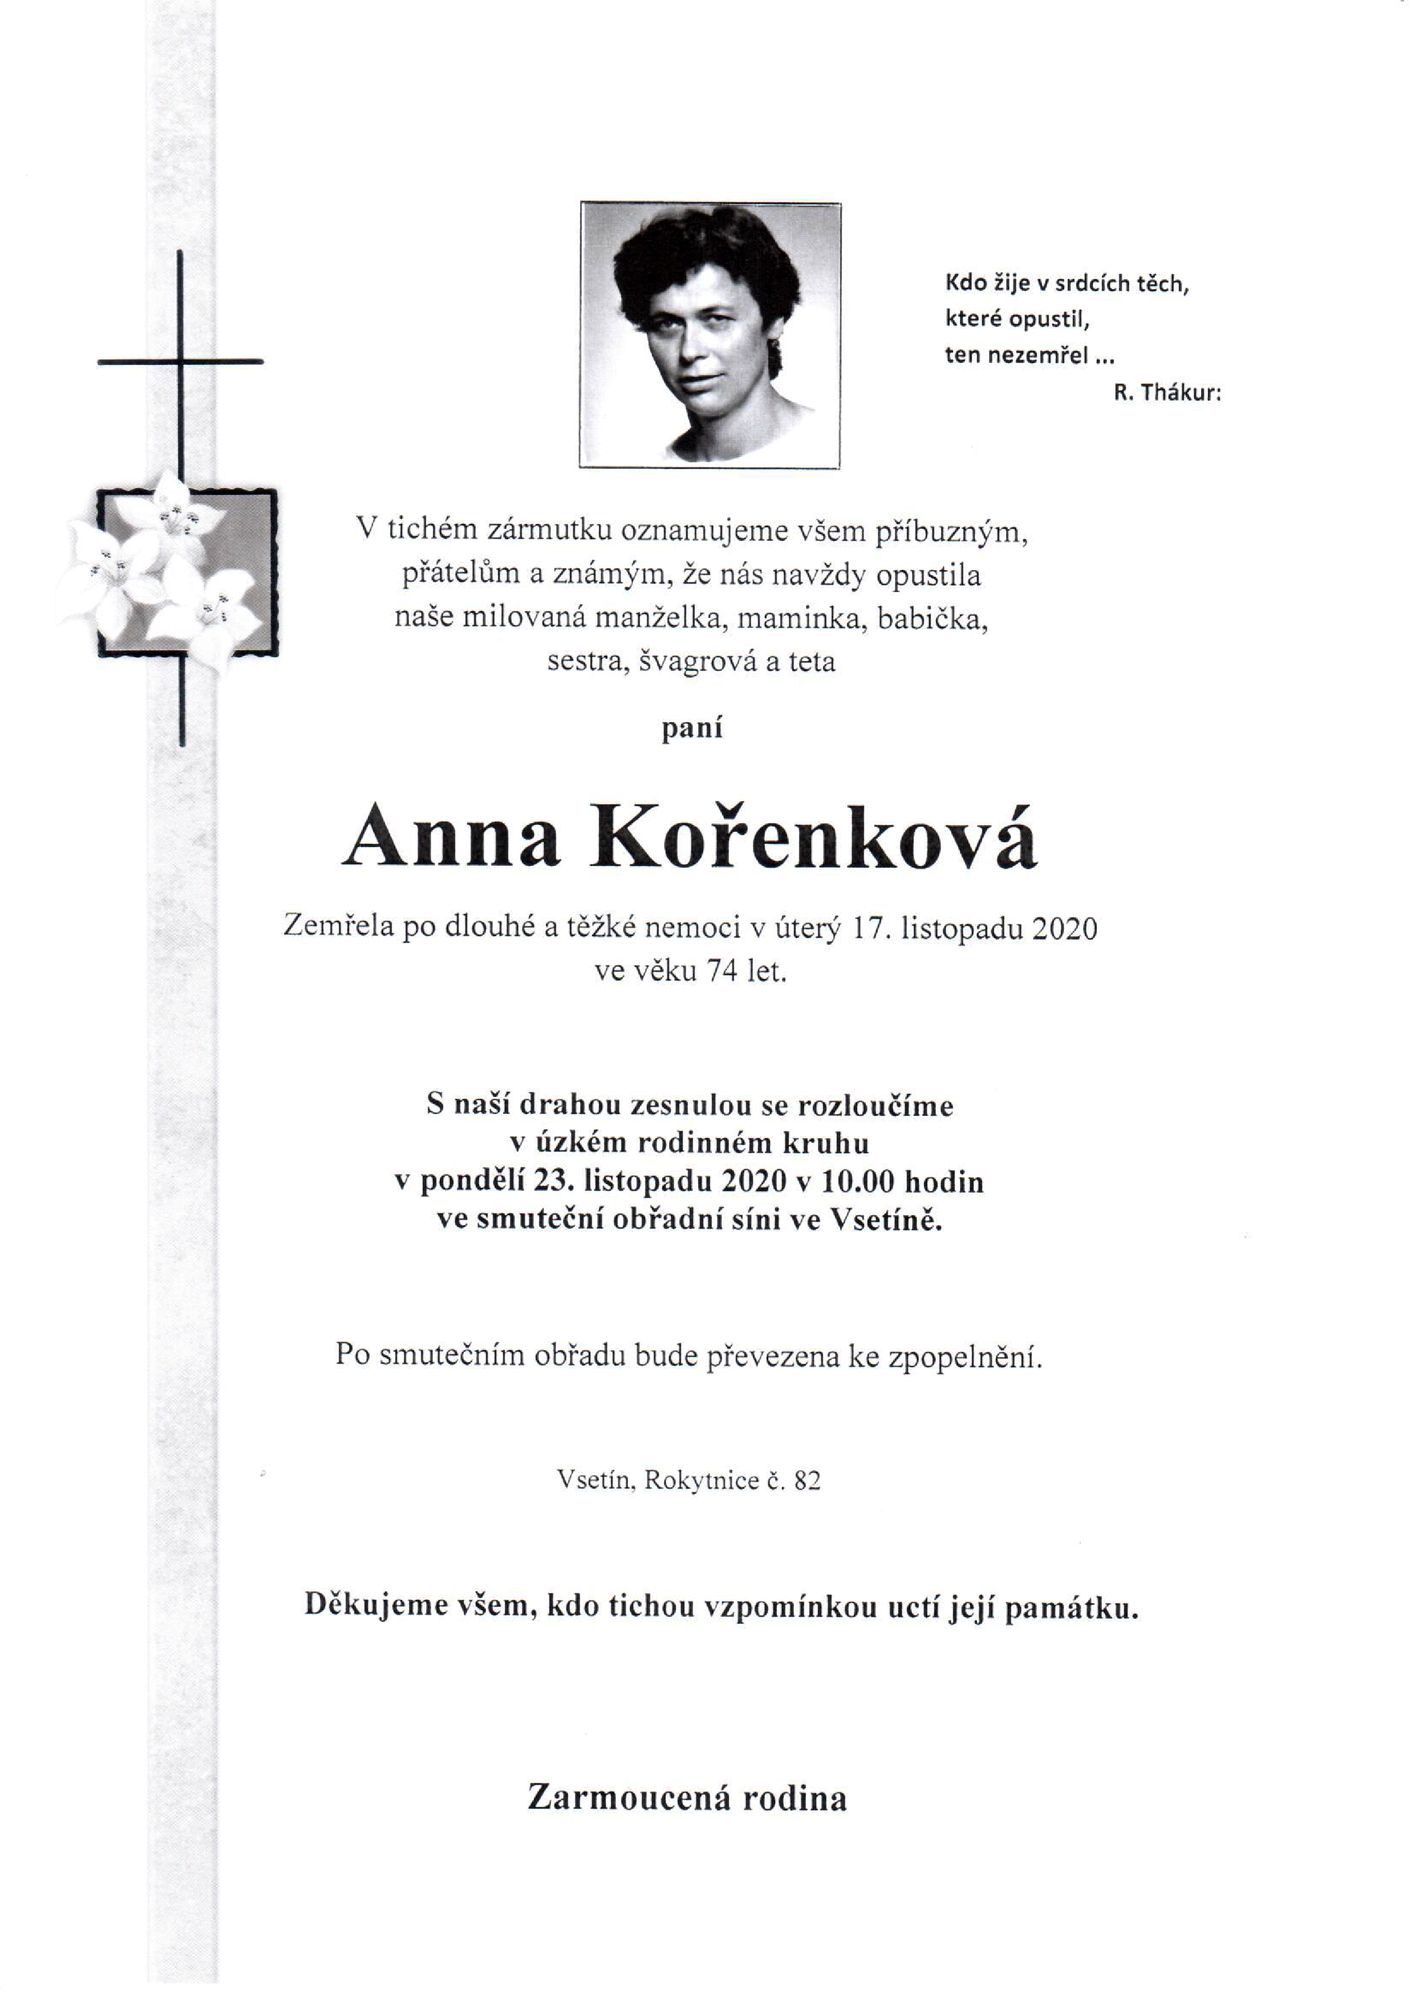 Anna Kořenková